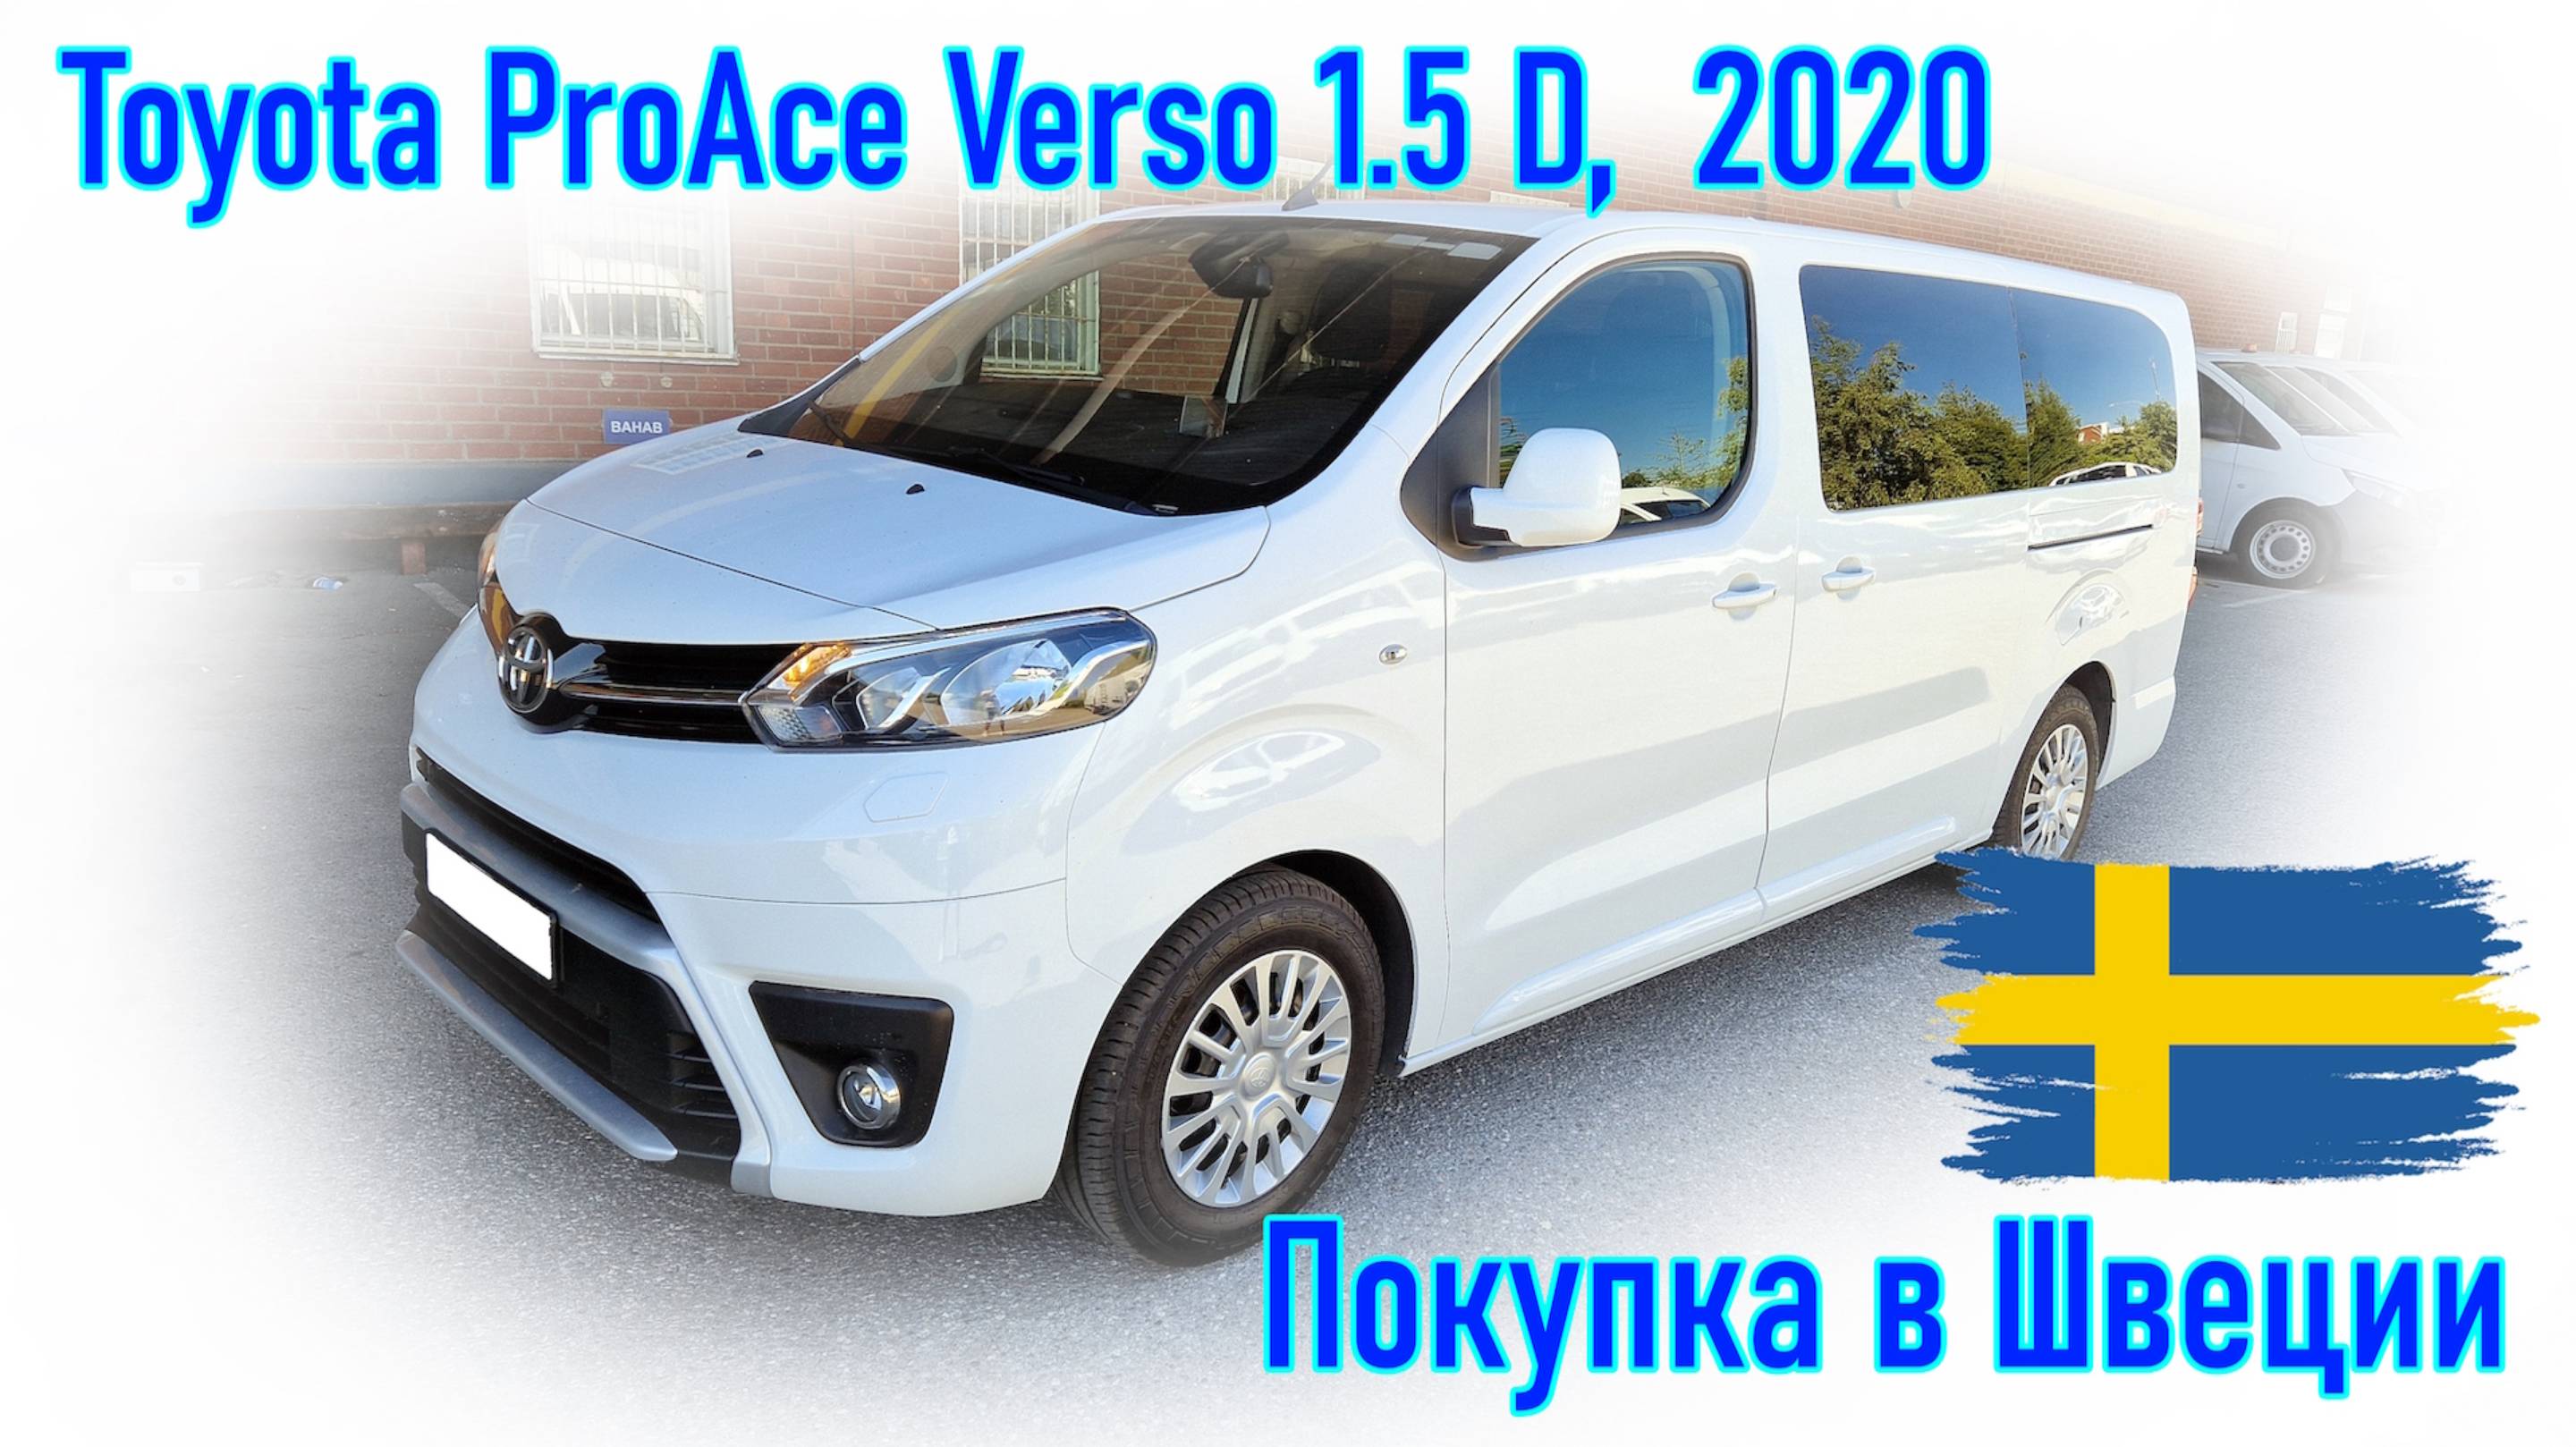 Покупка и пригон авто из Европы (Скандинавия, Швеция). Toyota ProAce Verso 1.5 D-4D 2020 г.в.